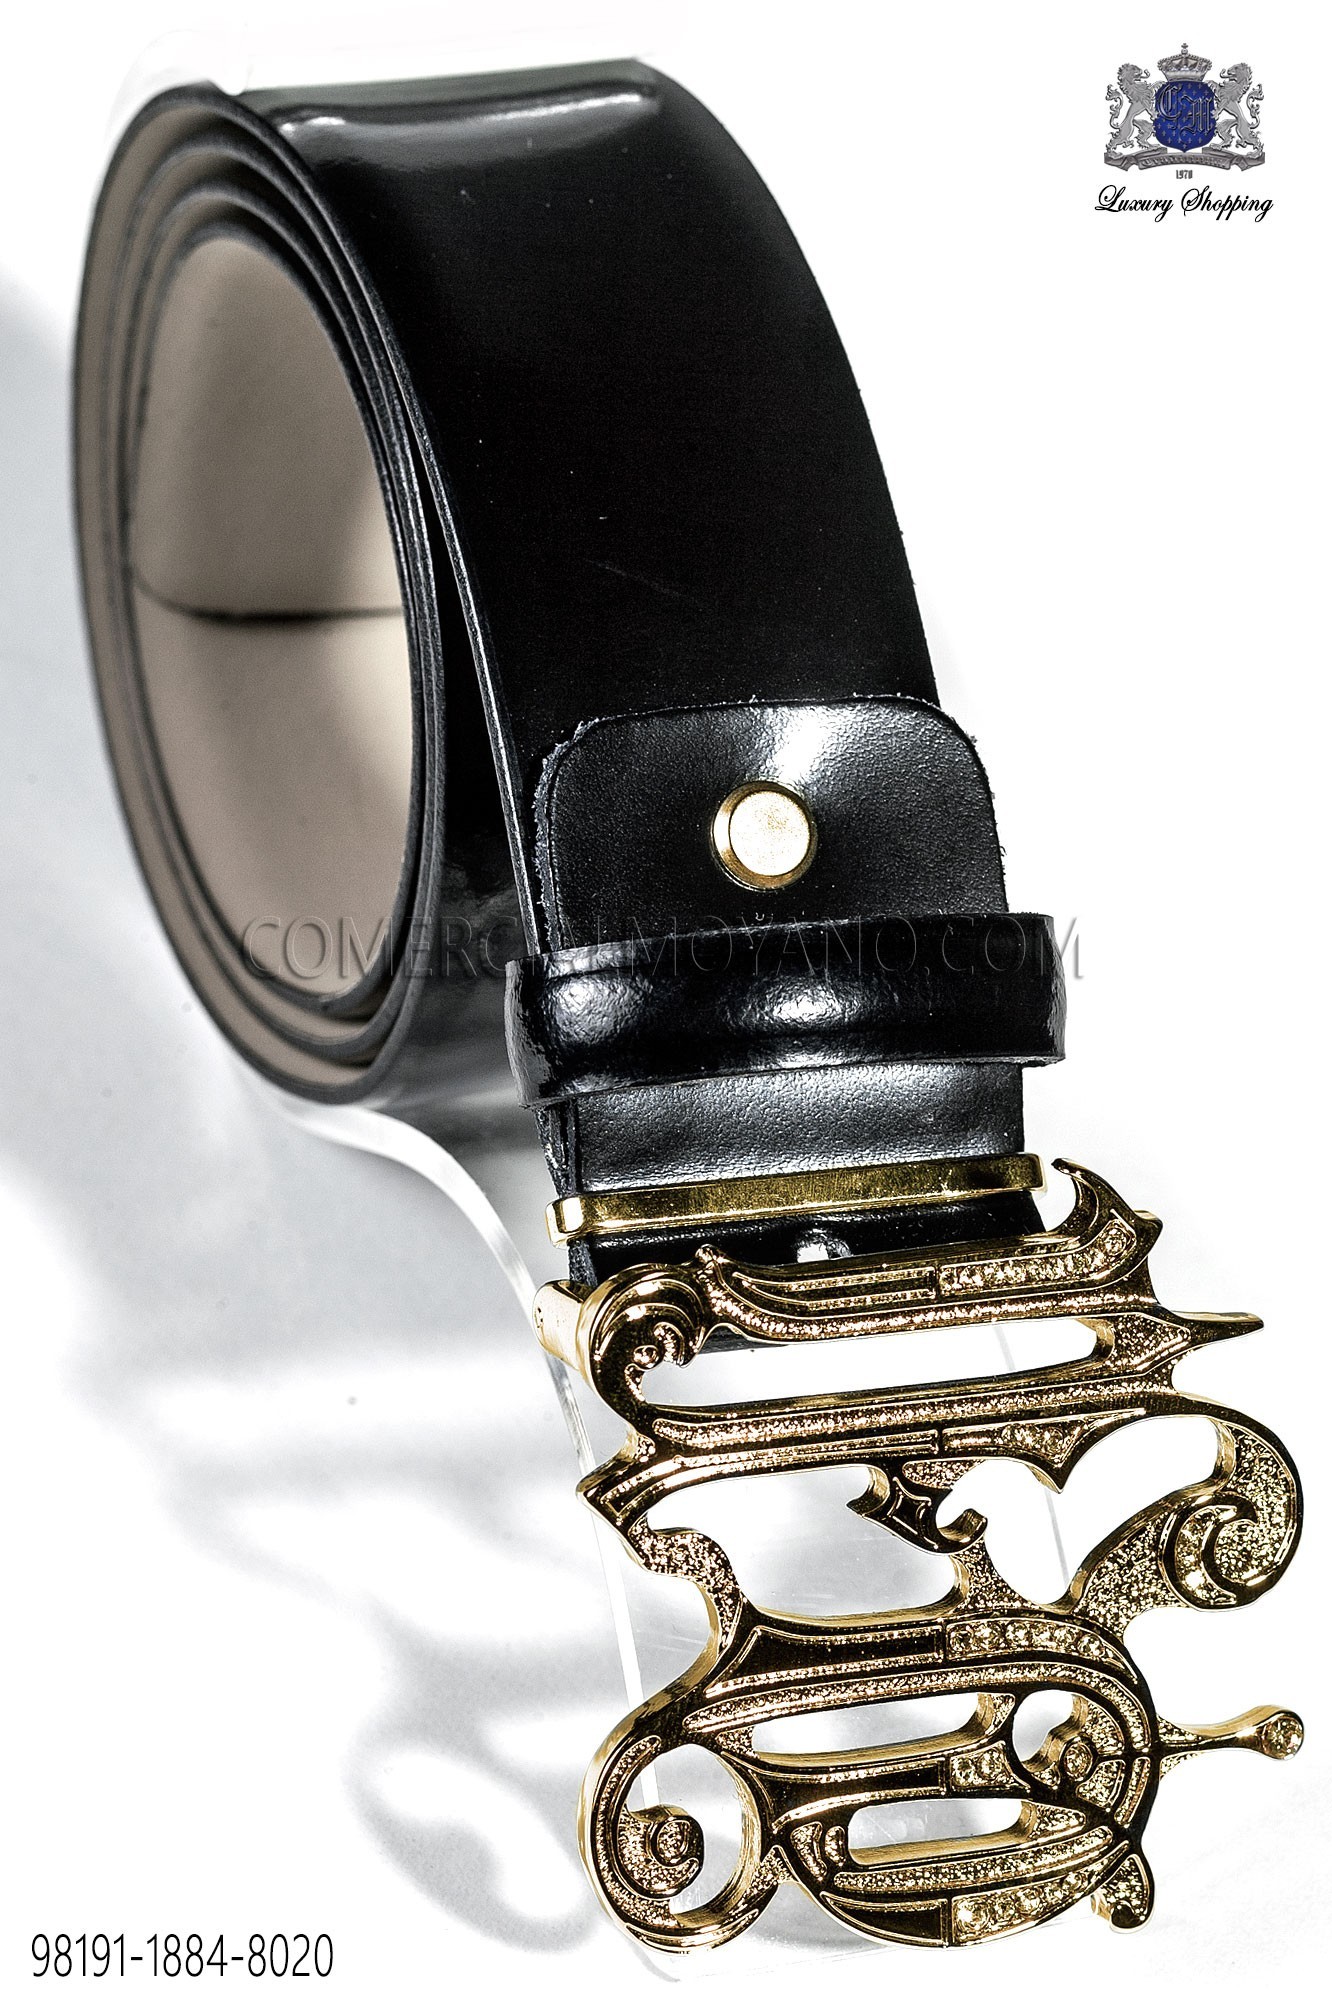 Black belt with gold baroque buckle, Mario Moreno